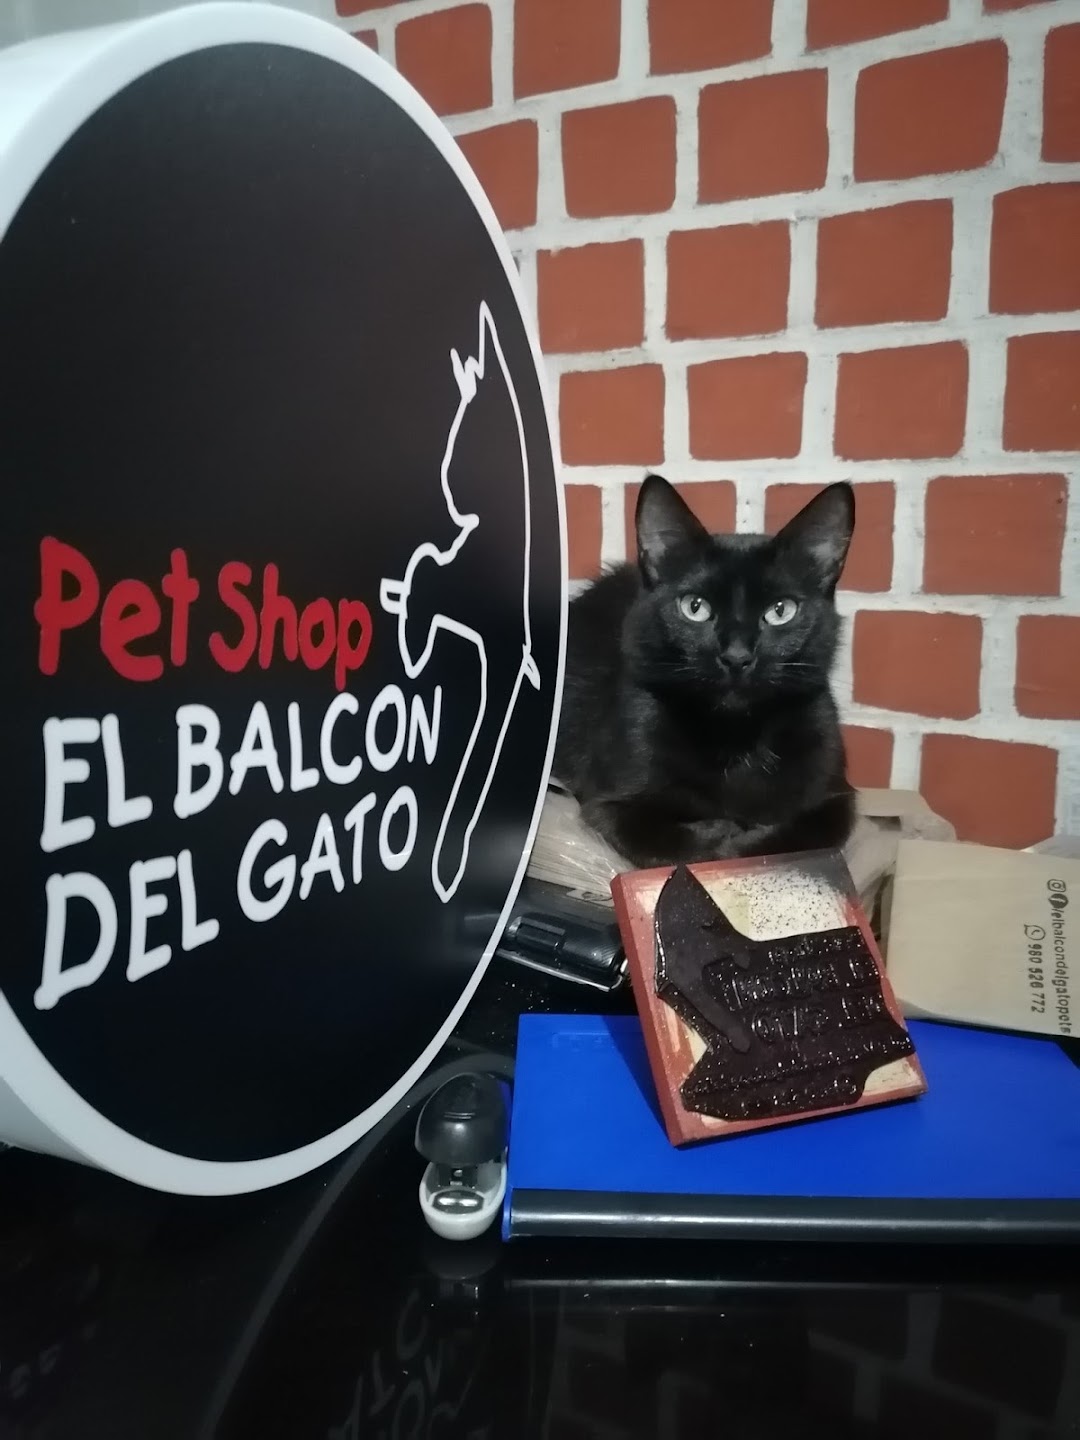 El Balcon del Gato Petshop